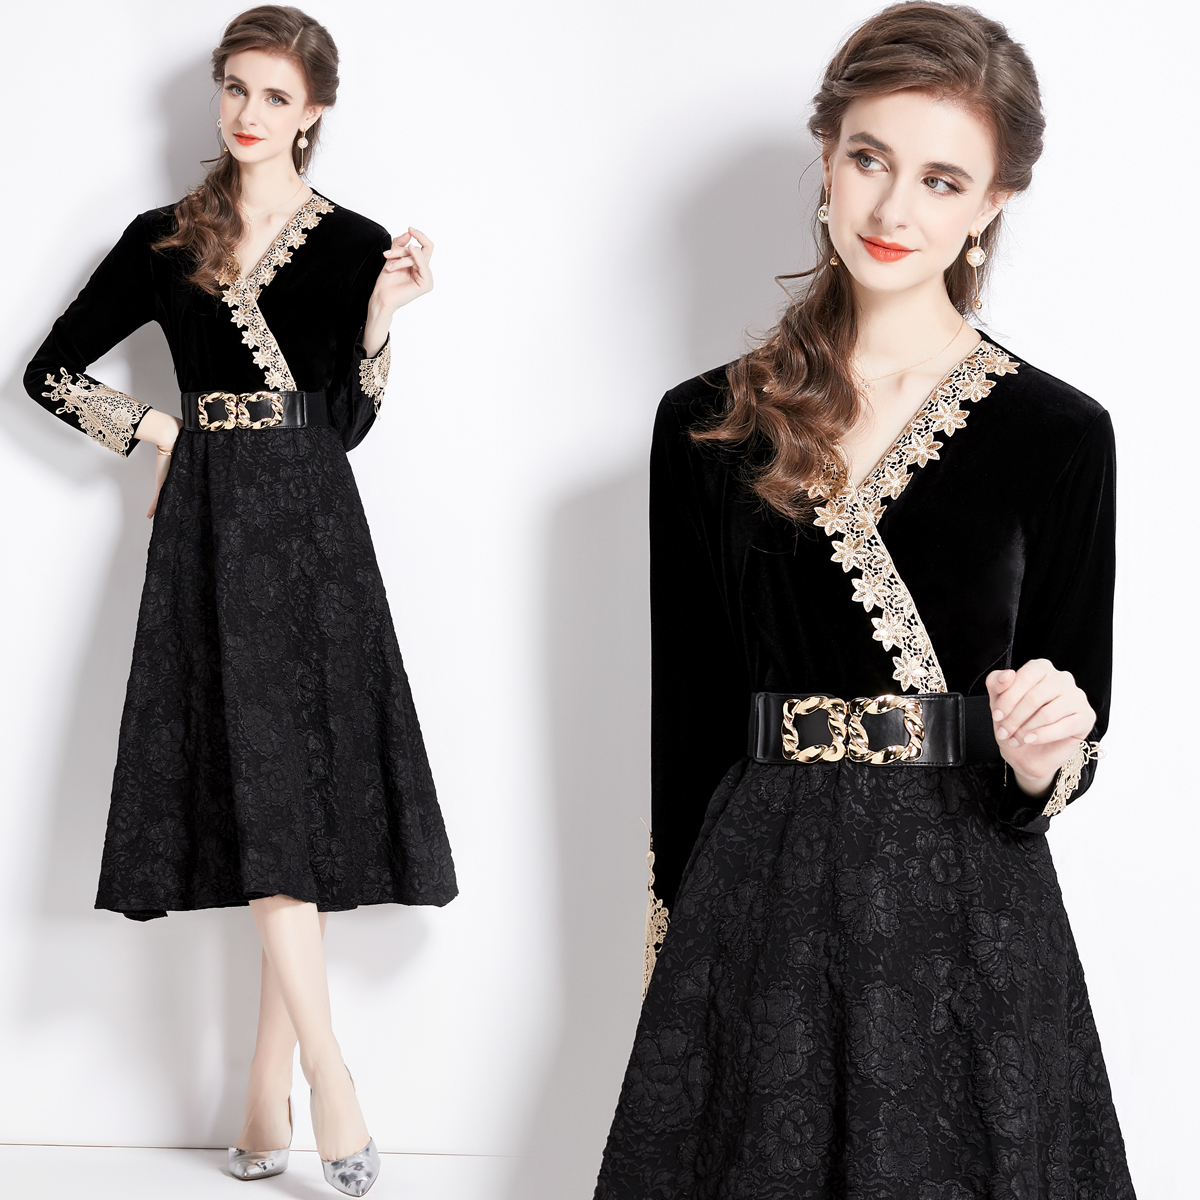 Jacquard velvet retro lace dress for women